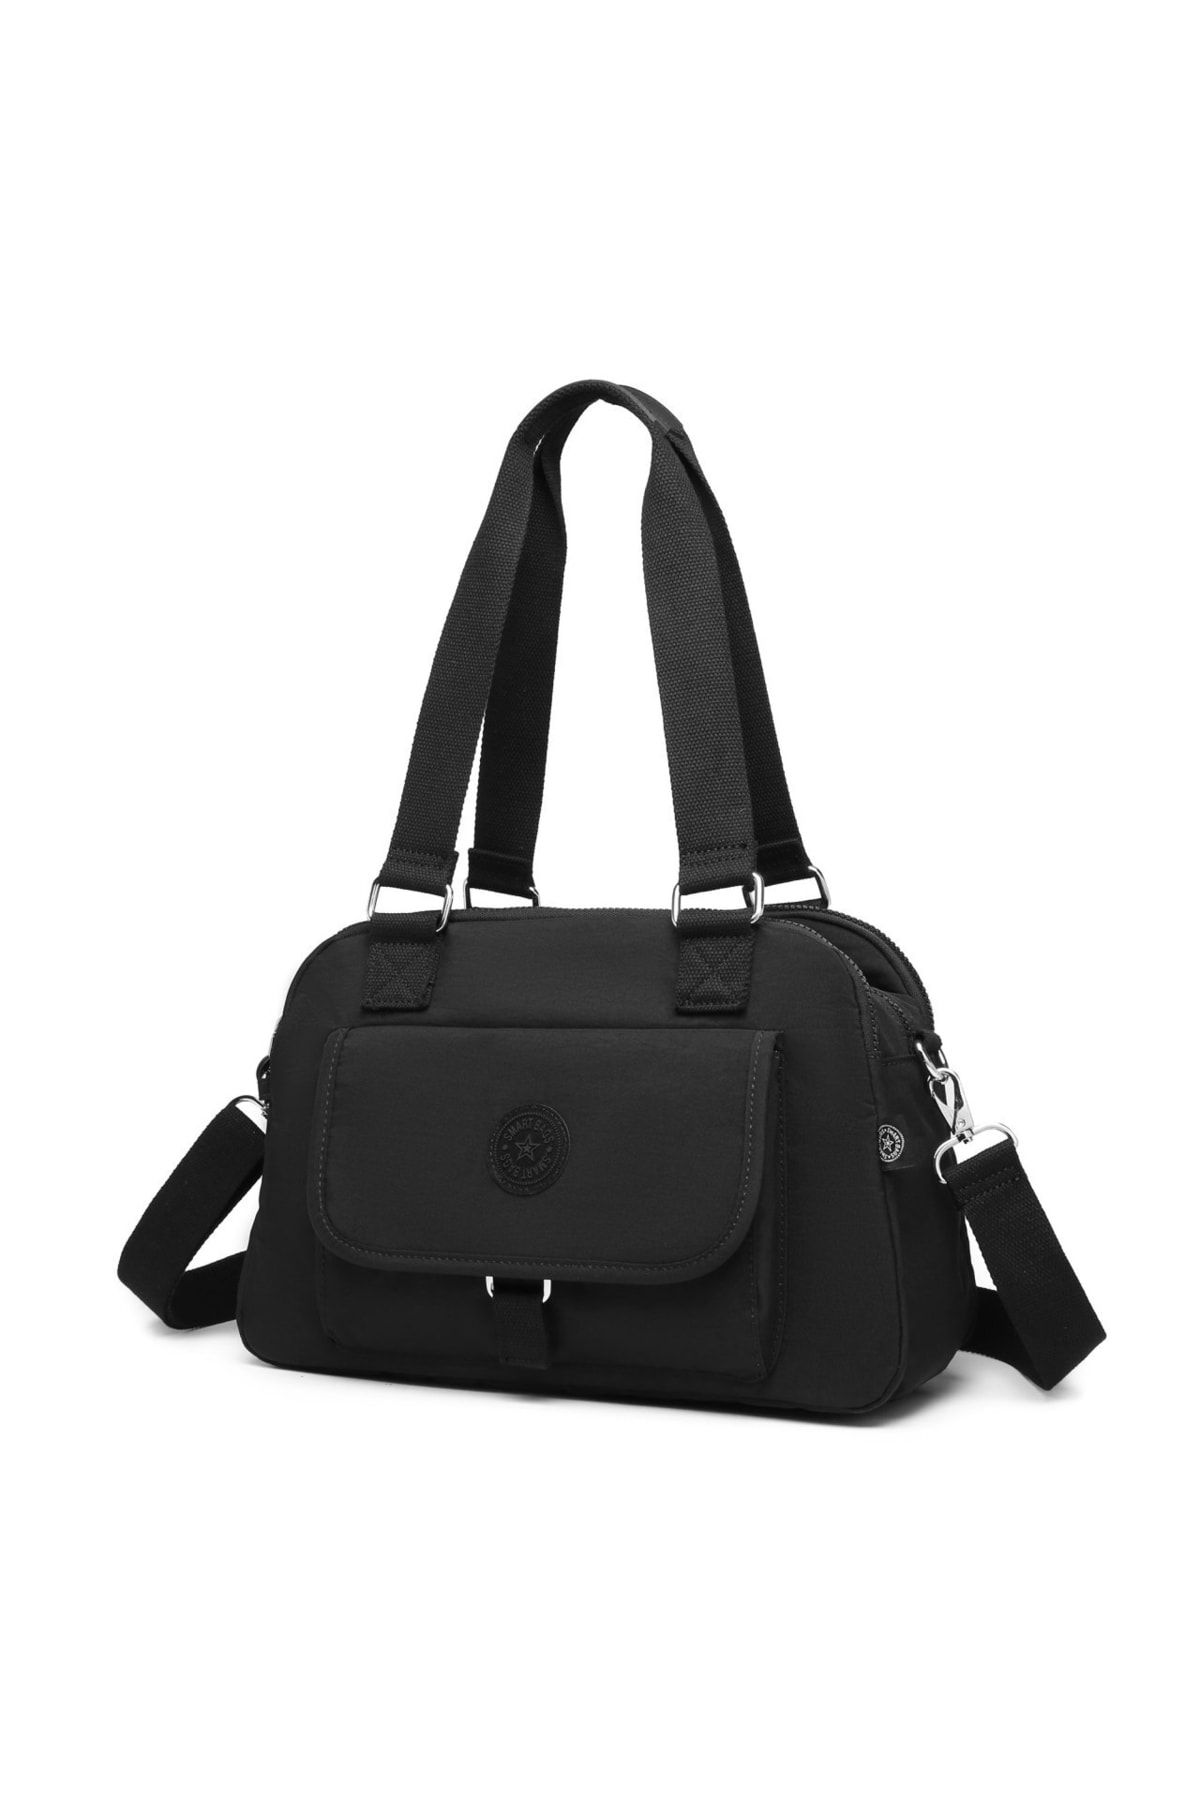 Smart Bags Kadın Siyah Omuz Çantası 2022-1122-0001